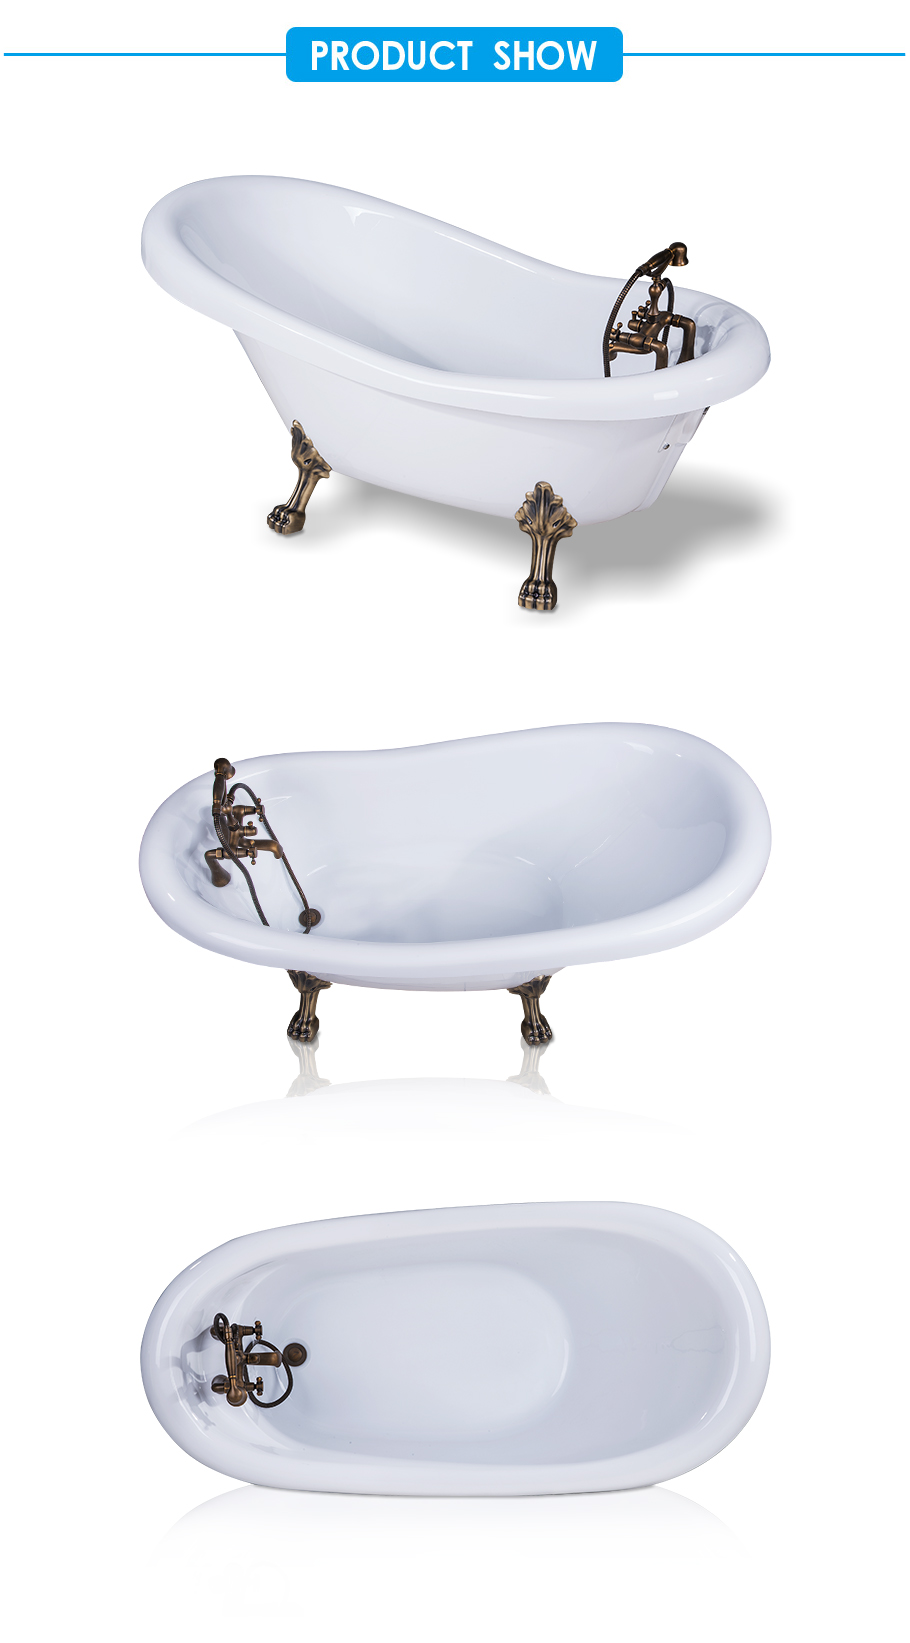 Goodwin Acrylic Clawfoot Tub in White